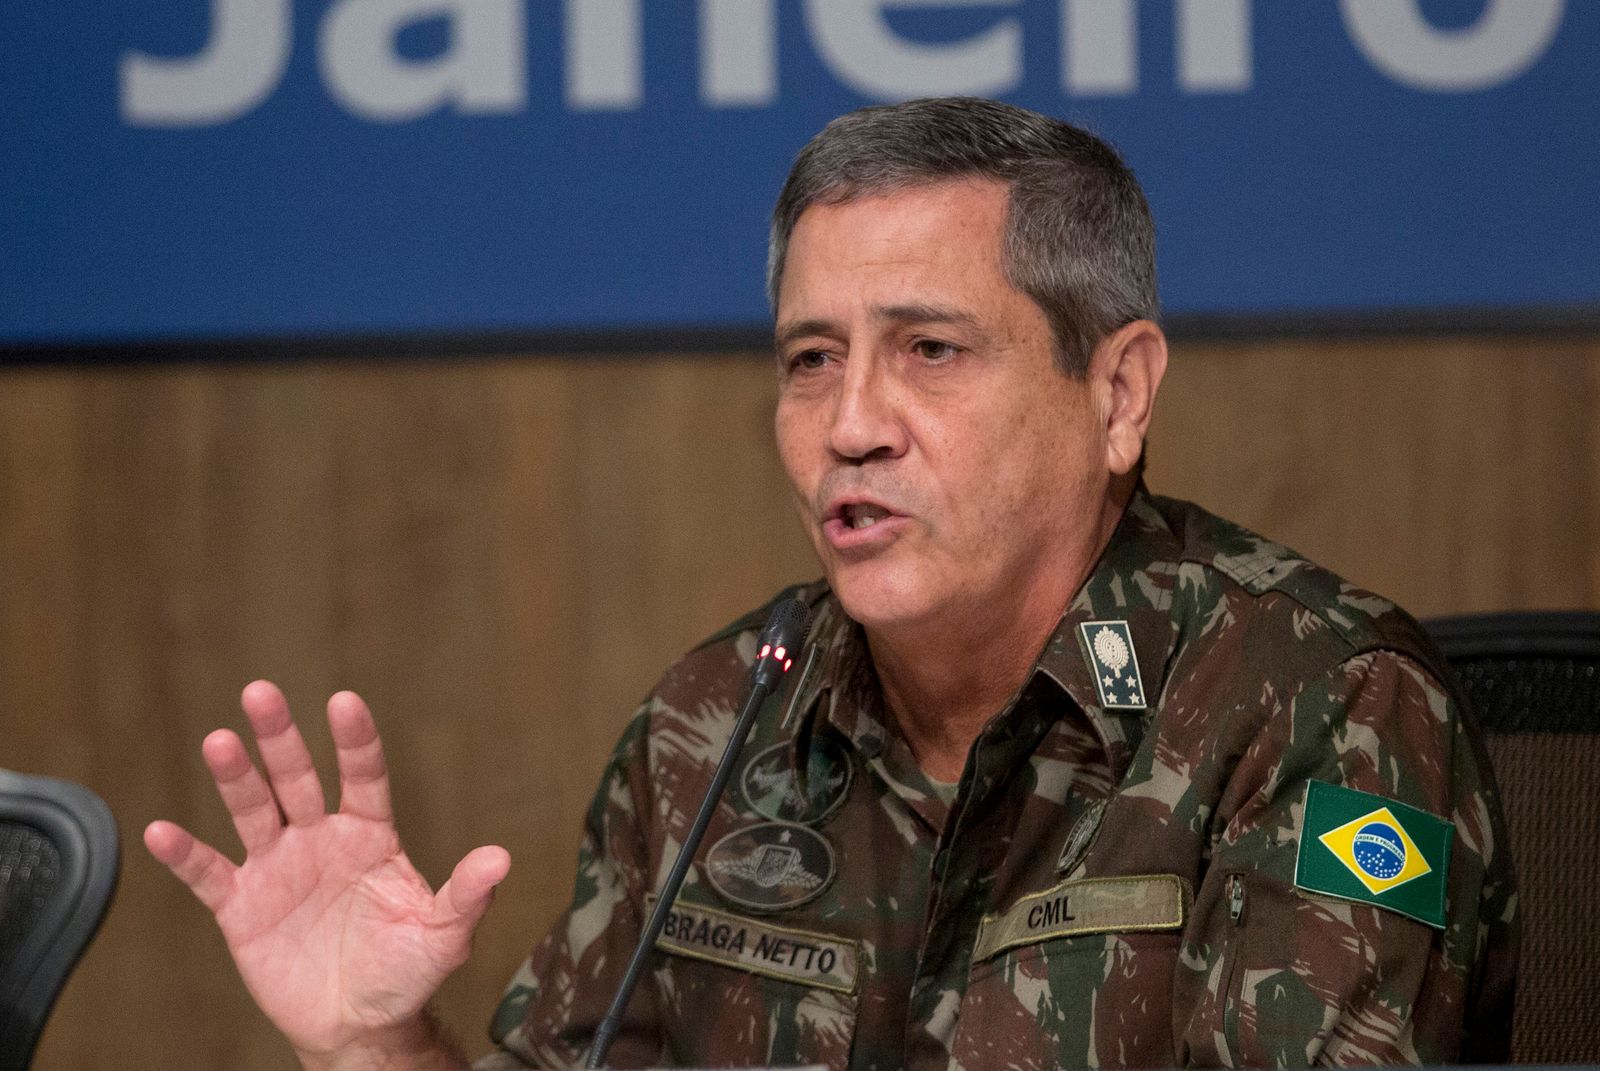 وزير الدفاع البرازيلي الجديد الجنرال المتقاعد والتر براغا نيتو خلال مؤتمر صحافي في ريو دي جانيرو - 27 فبراير 2018 - AP